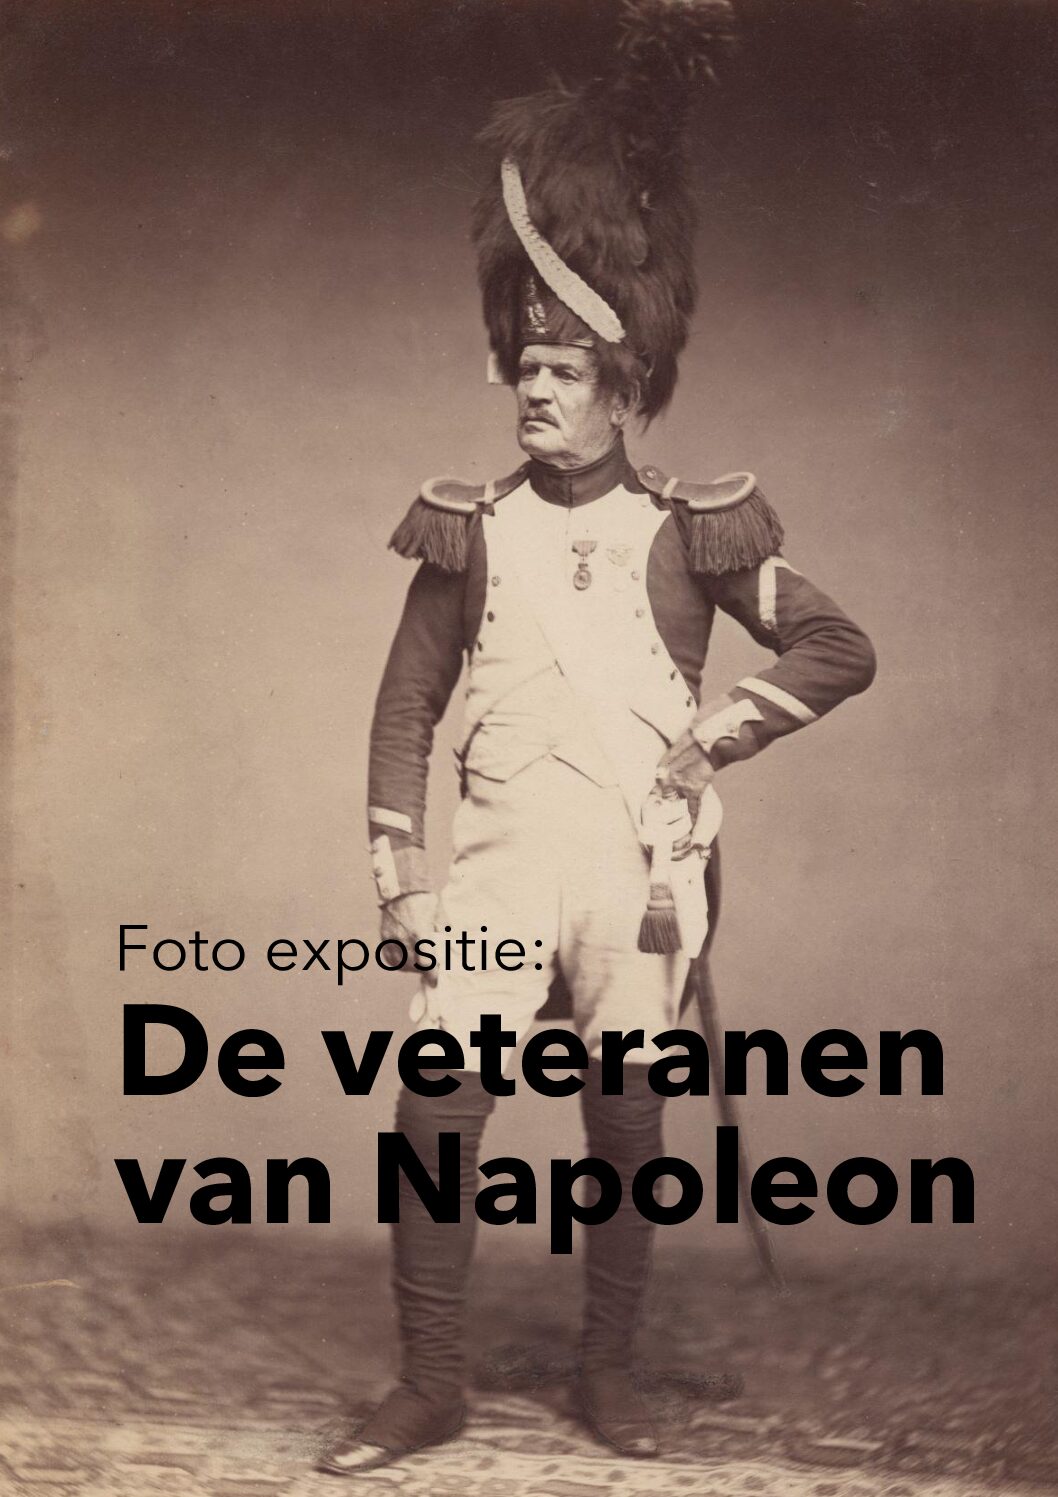 De veteranen van Napoleon